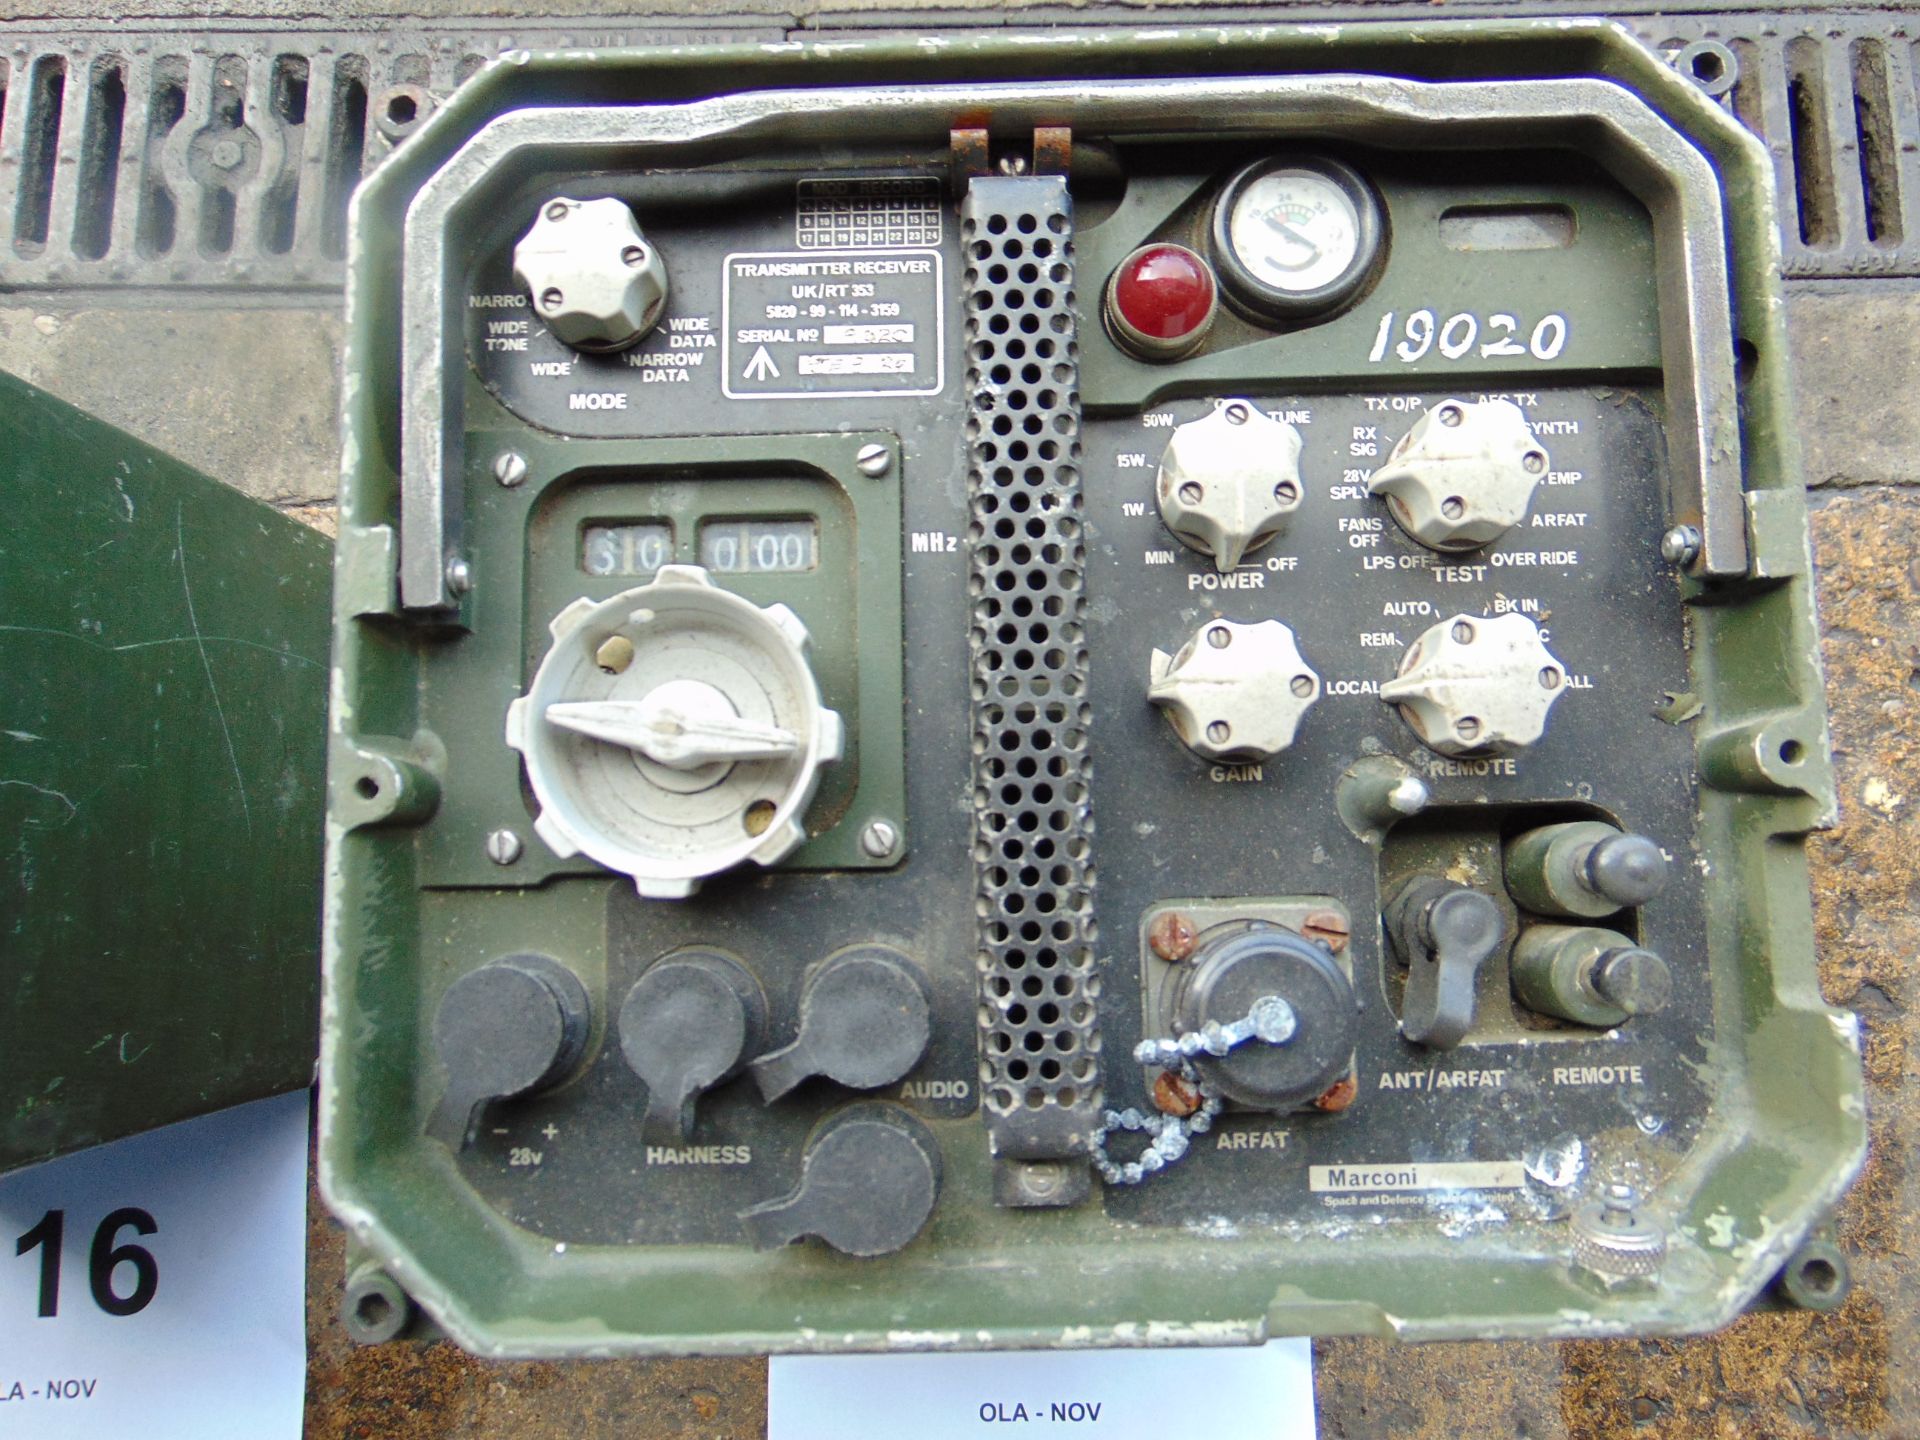 Clansman UK/RT 353 Transmitter Receiver VHF Set